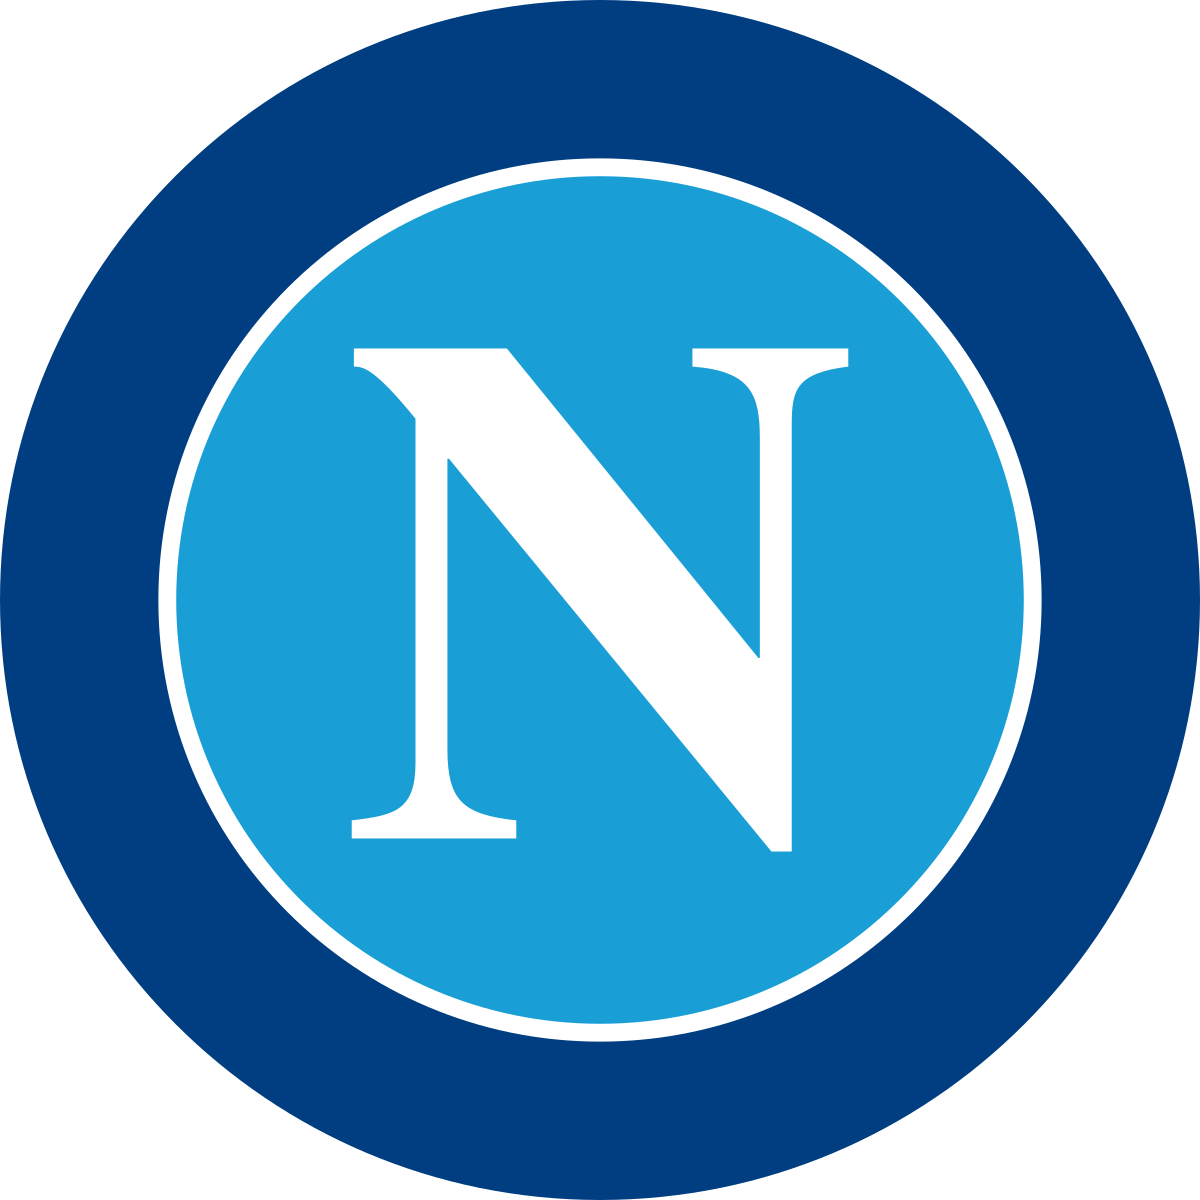 Il Napoli è, ovviamente, uno dei club più famosi d’Italia, ma tornerà mai al livello degli anni ’90?